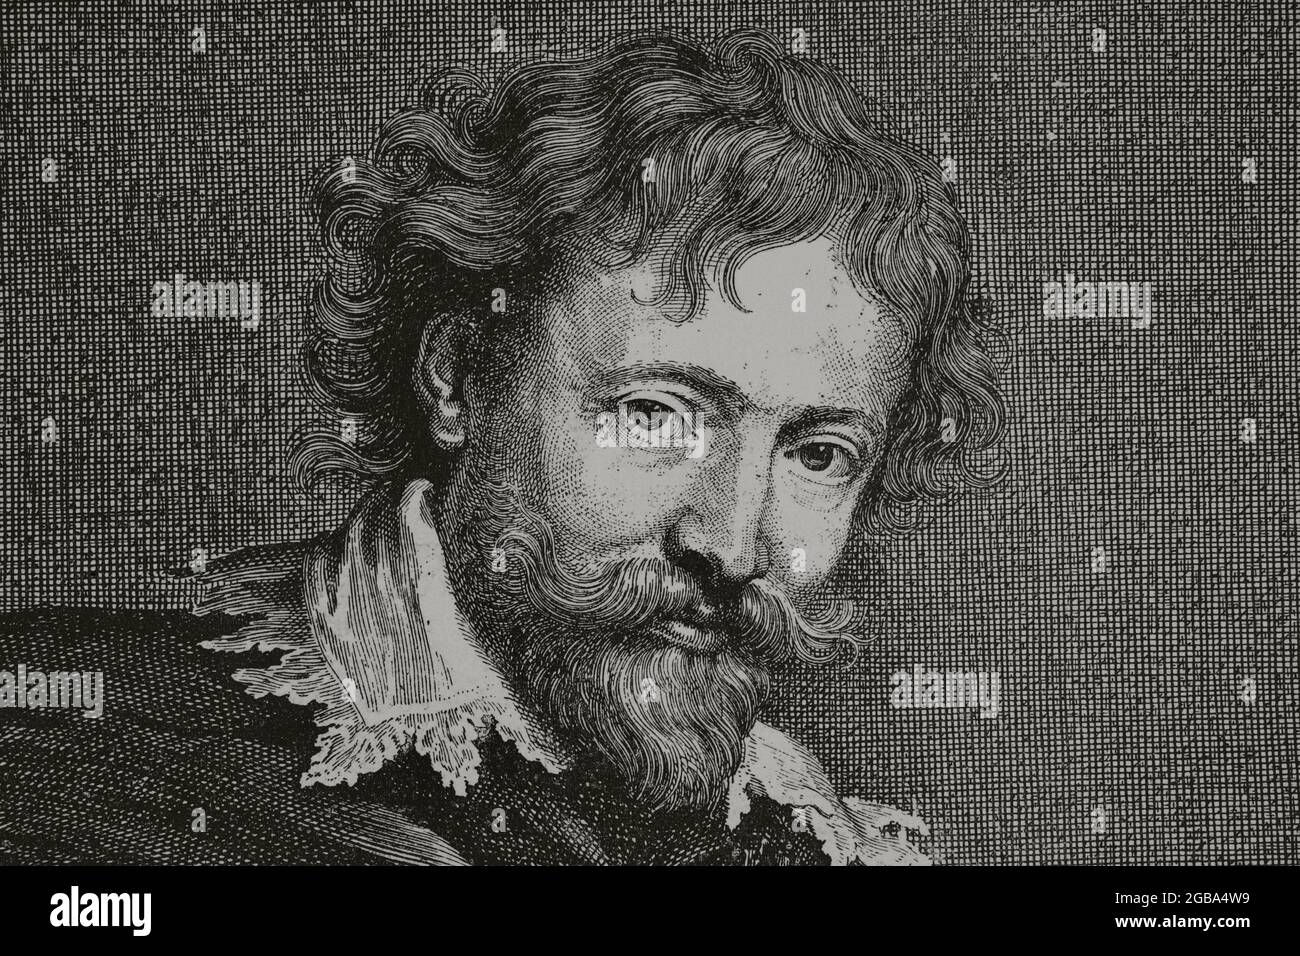 Peter Paul Rubens (1577-1640). Peintre baroque de l'école flamande. Portrait de Van Dyck. Gravure après gravure par Pontius. Détails. Gravure. La Ilustración Española y Americana, 15 décembre 1882. Banque D'Images